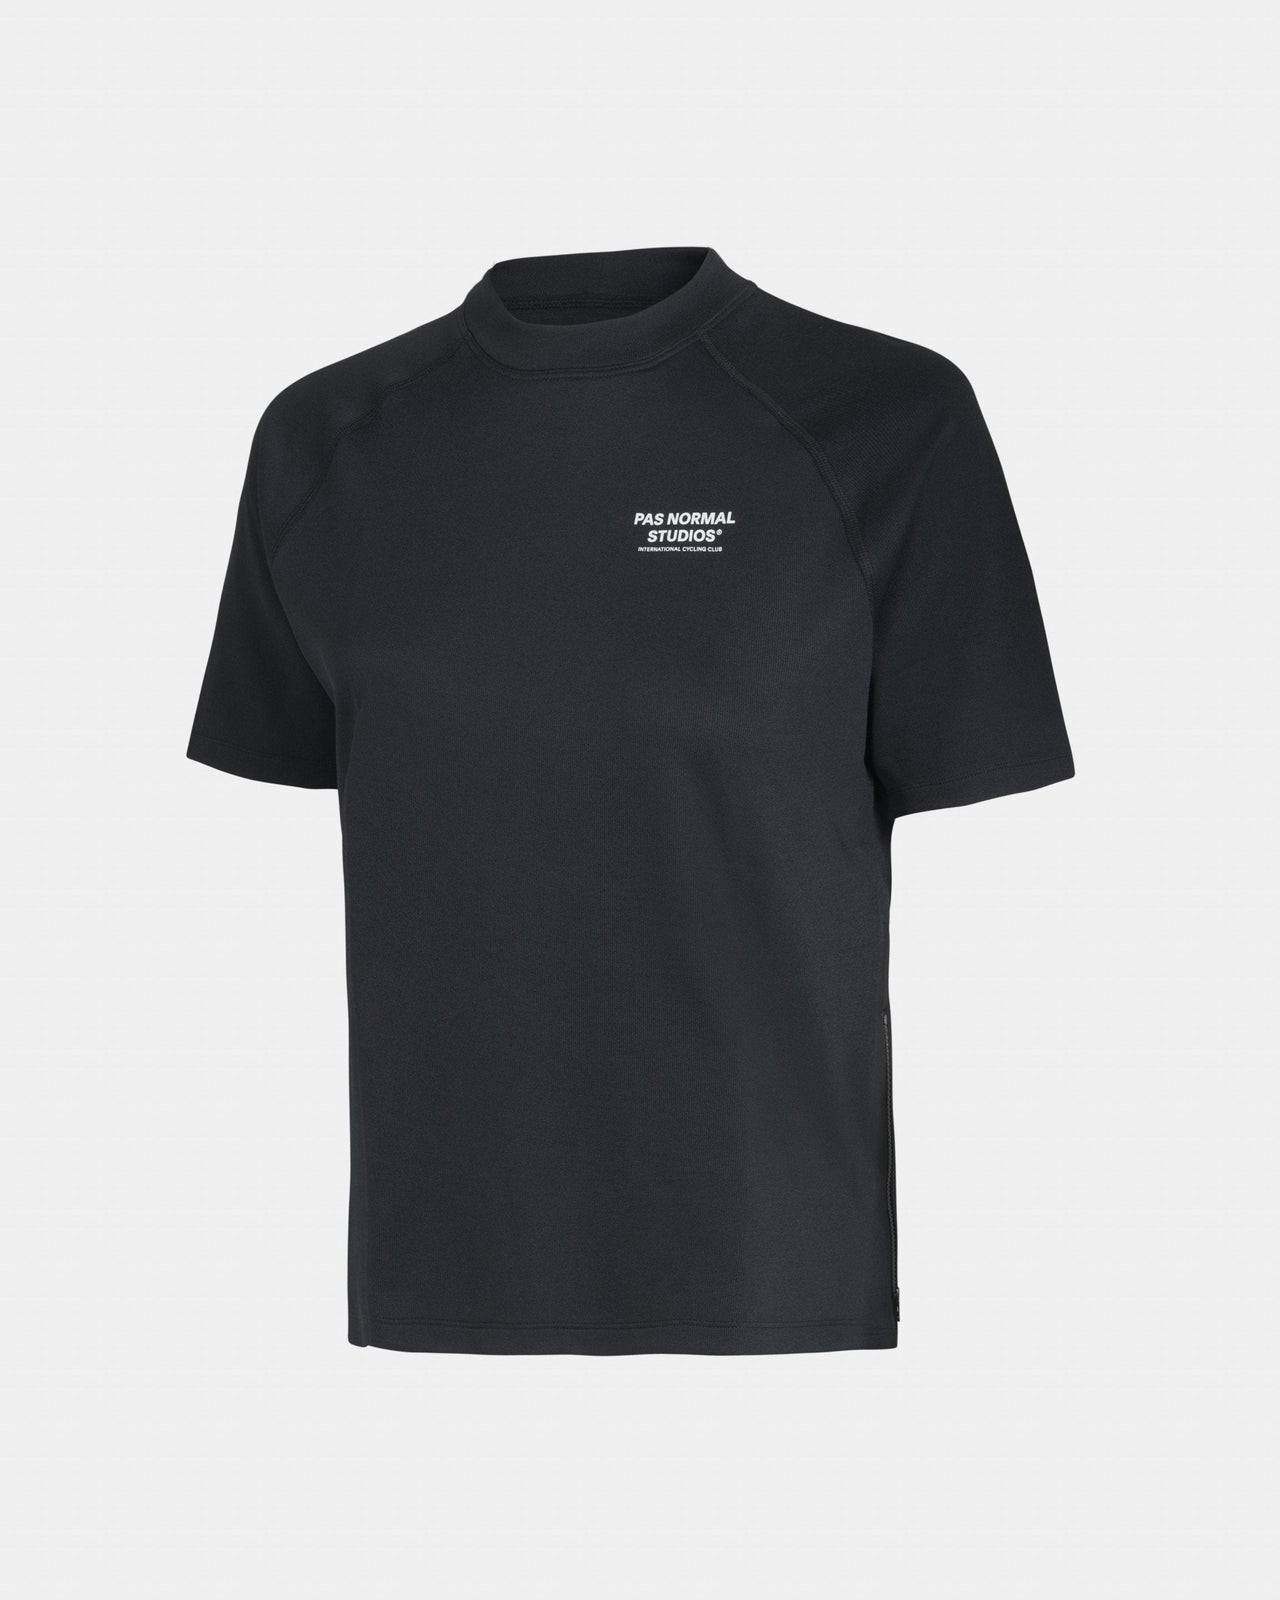 Women's Escapism Technical T-Shirt - Black